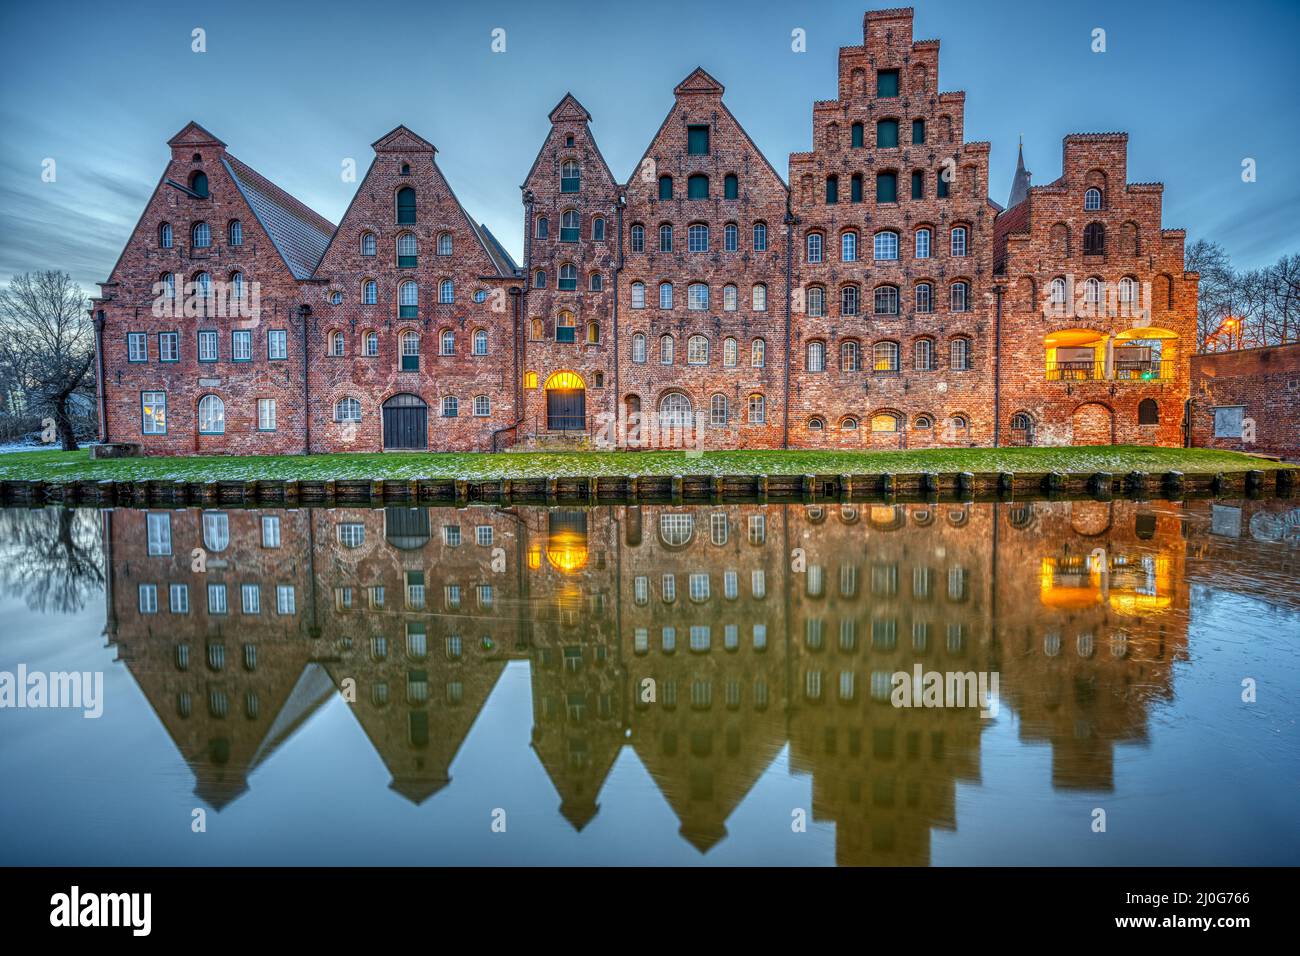 Der historische Salzspeicher spiegelt sich in der Trave bei Sonnenaufgang, gesehen in Lübeck, Deutschland Stockfoto